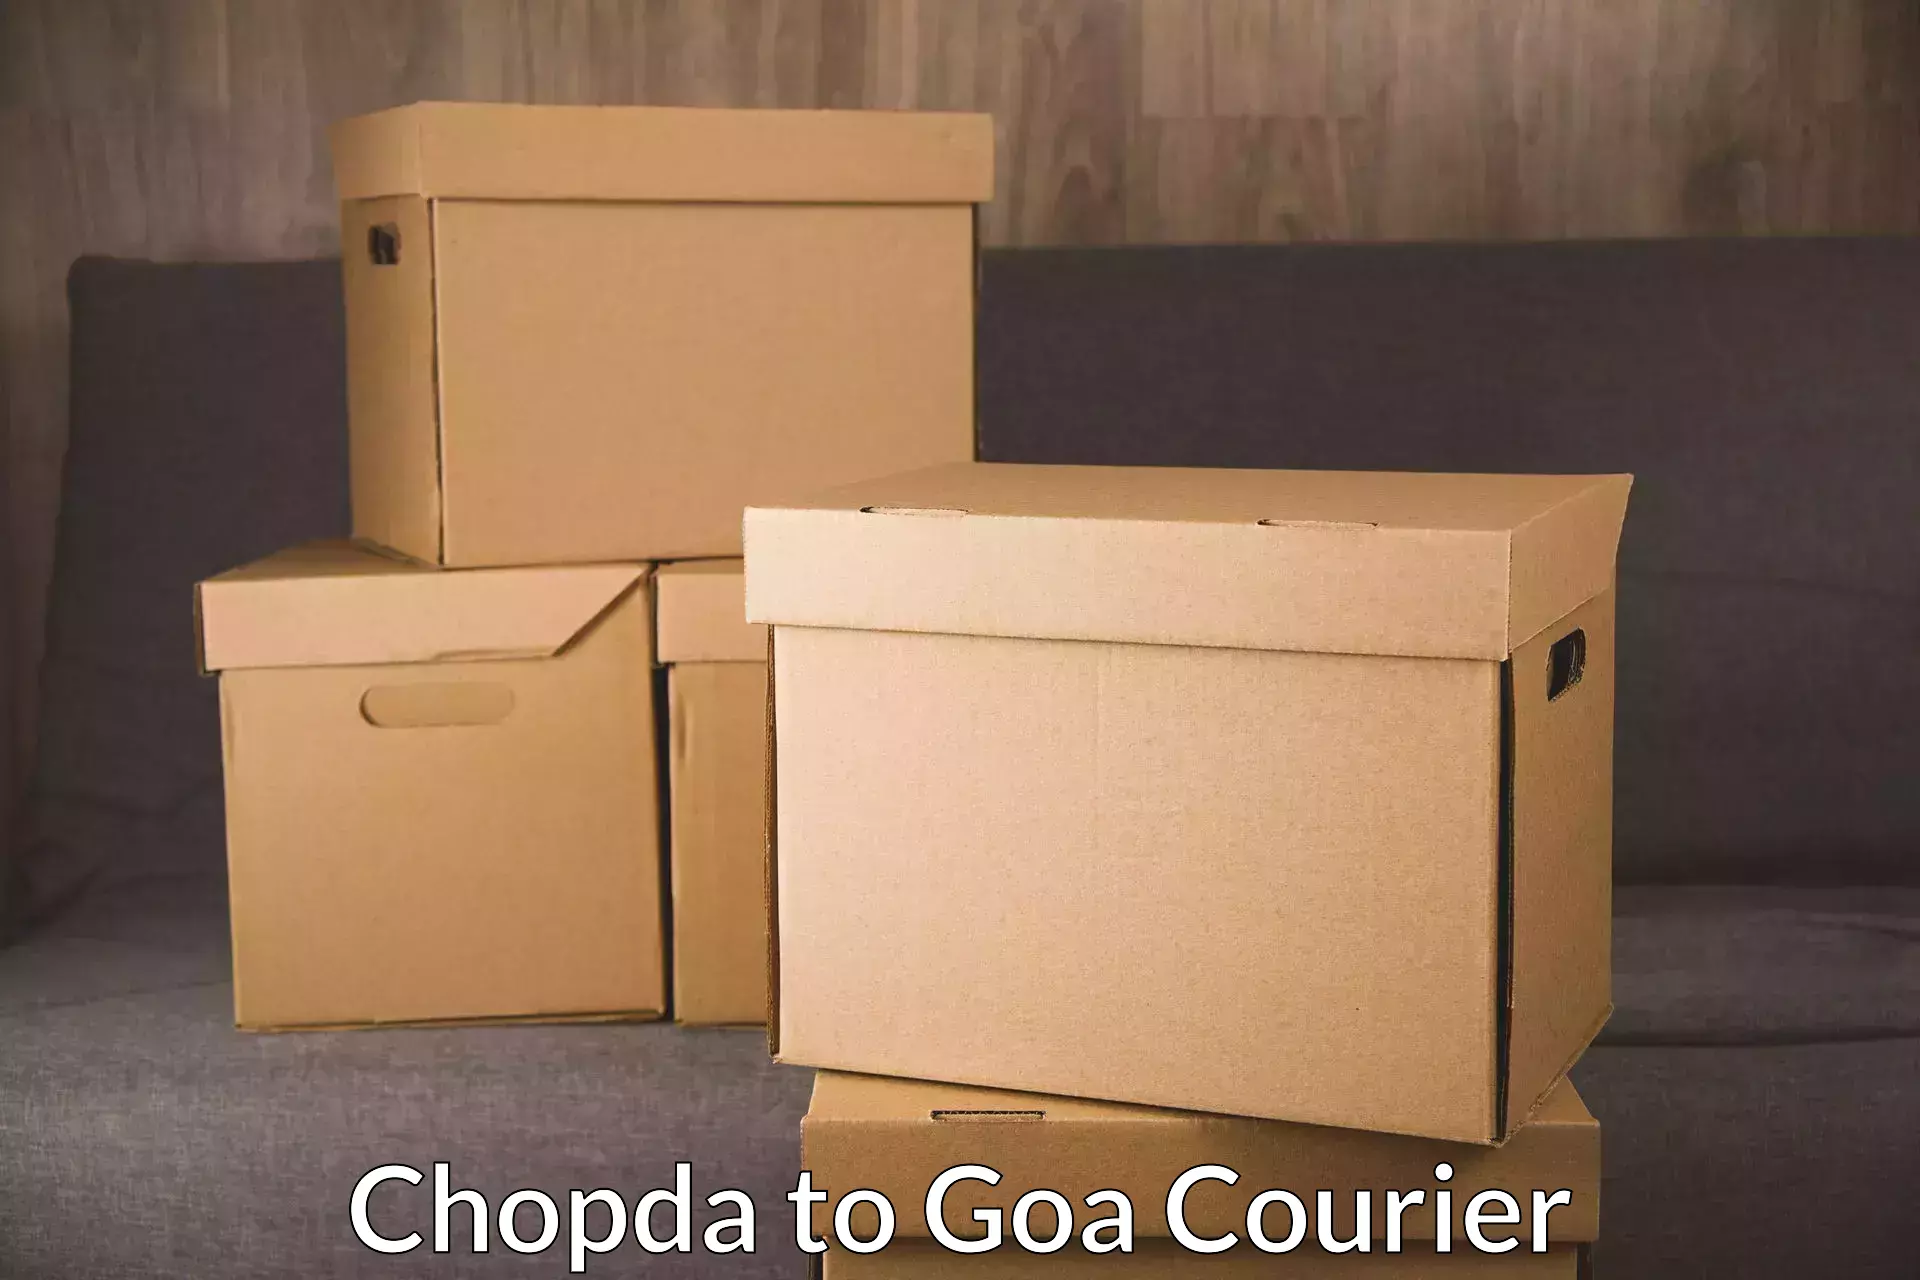 Premium courier services Chopda to Vasco da Gama